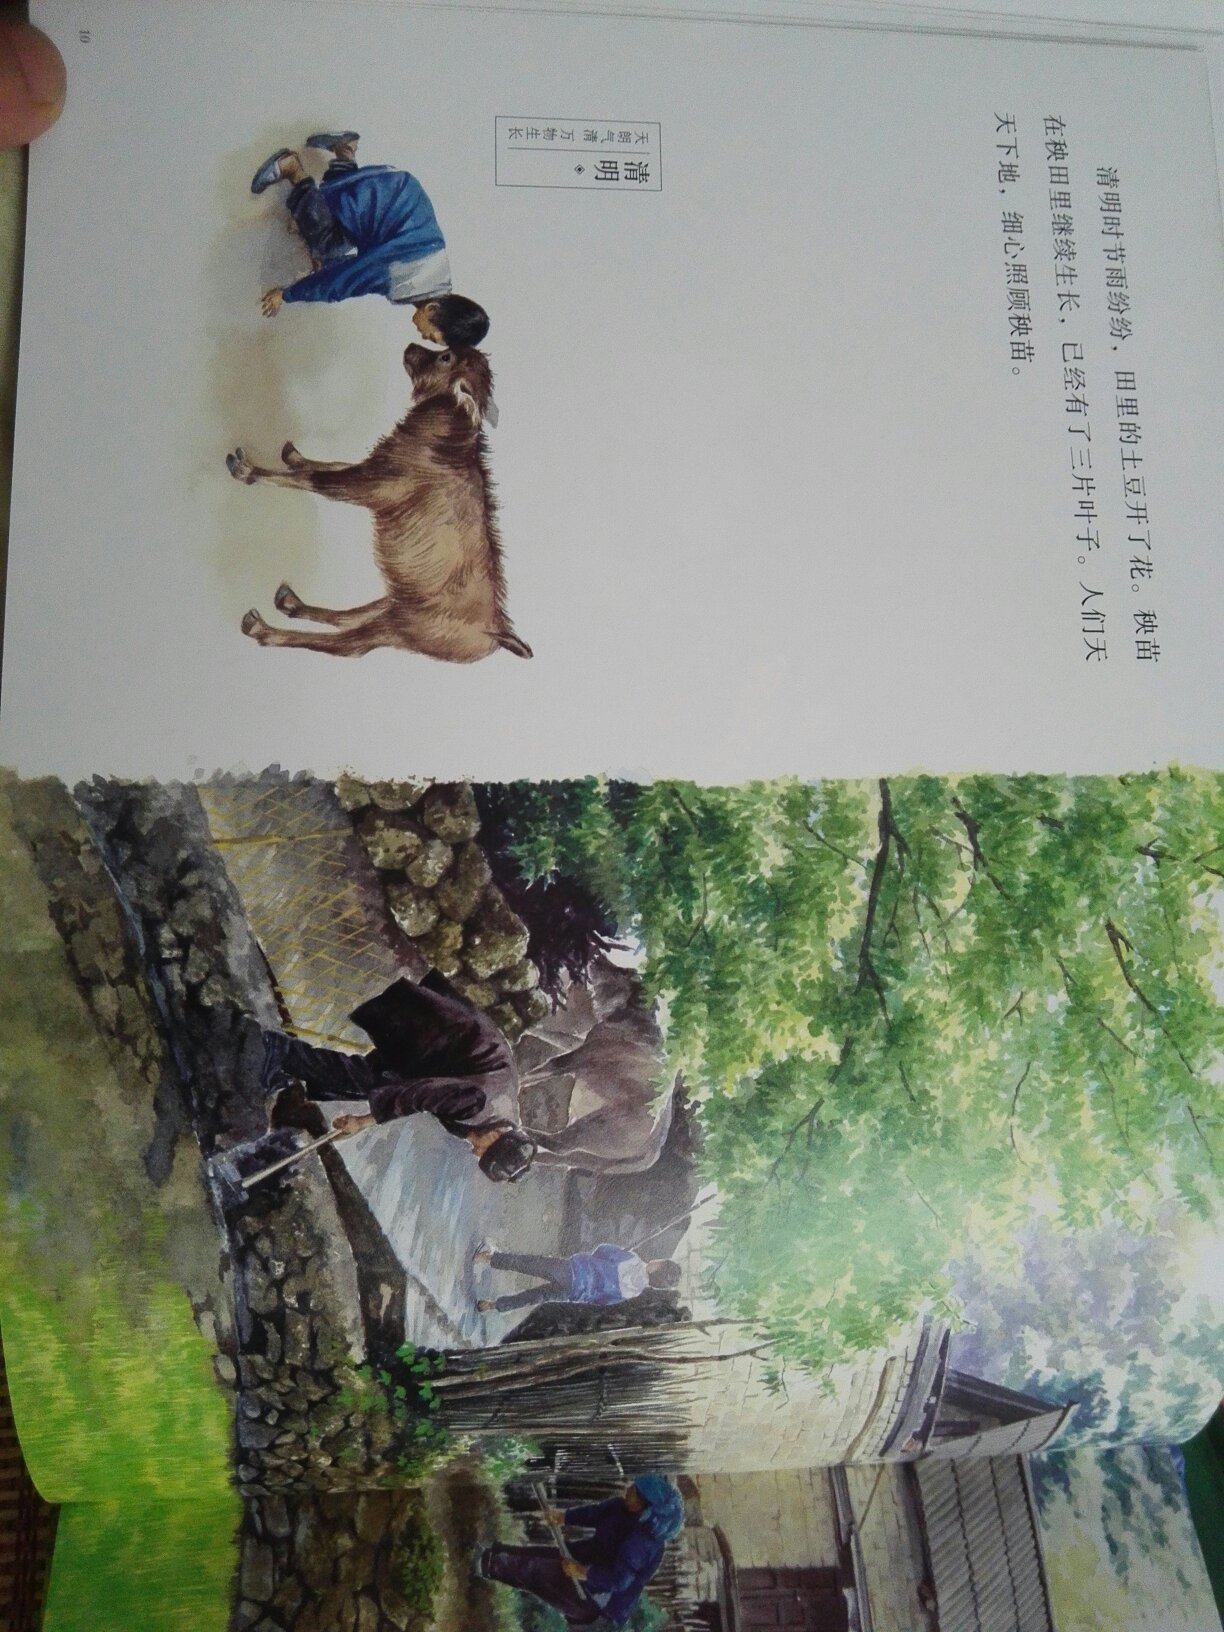 又是一个具有神话的中国故事，画中女子有法术，就像白素贞一样，书的插画很有中国味道，看到牛耕地，就想起小时候的农村景象